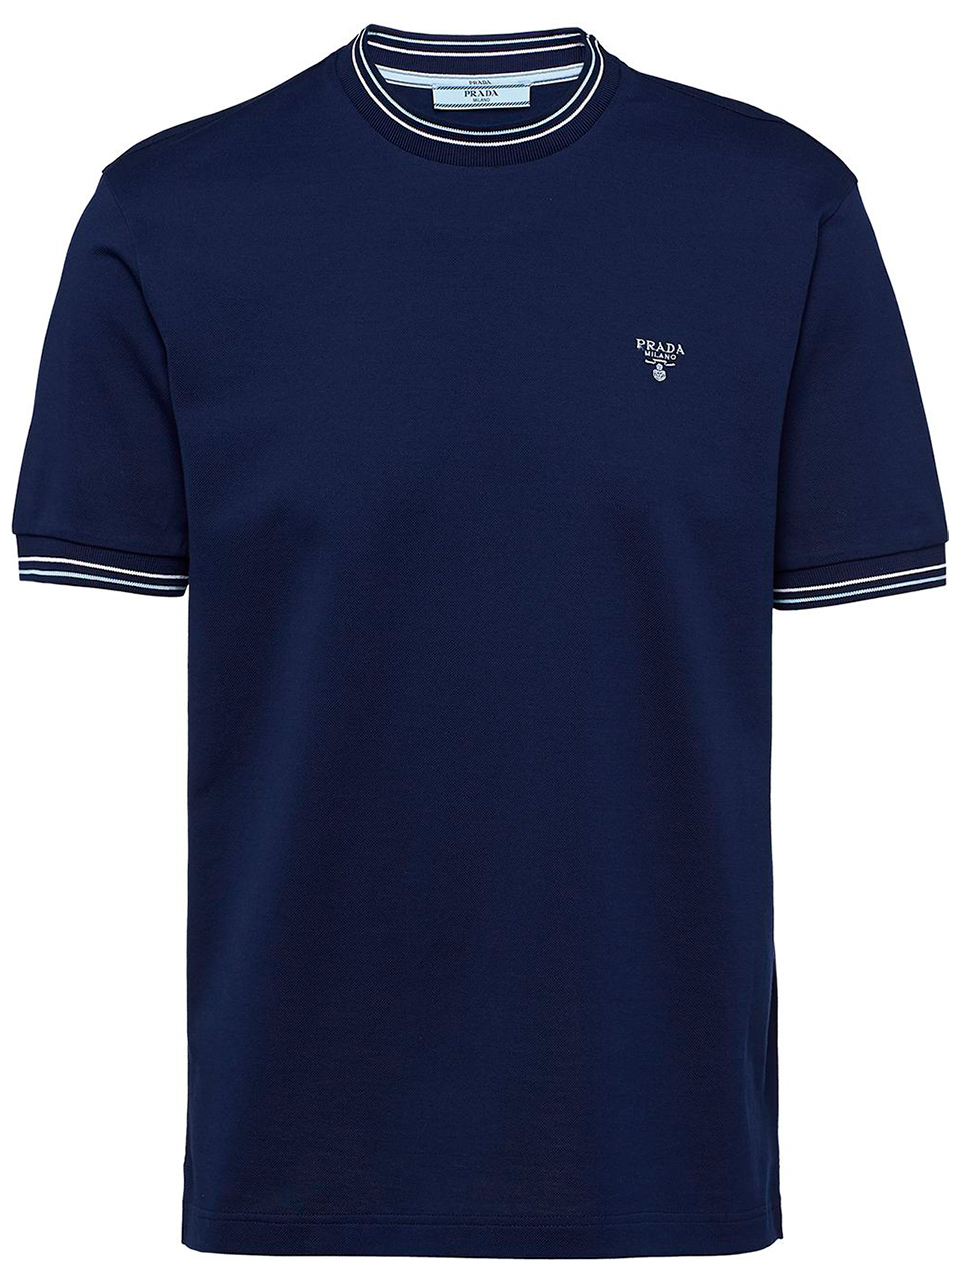 Imagem de: Camiseta Prada Azul Escuro com Logo